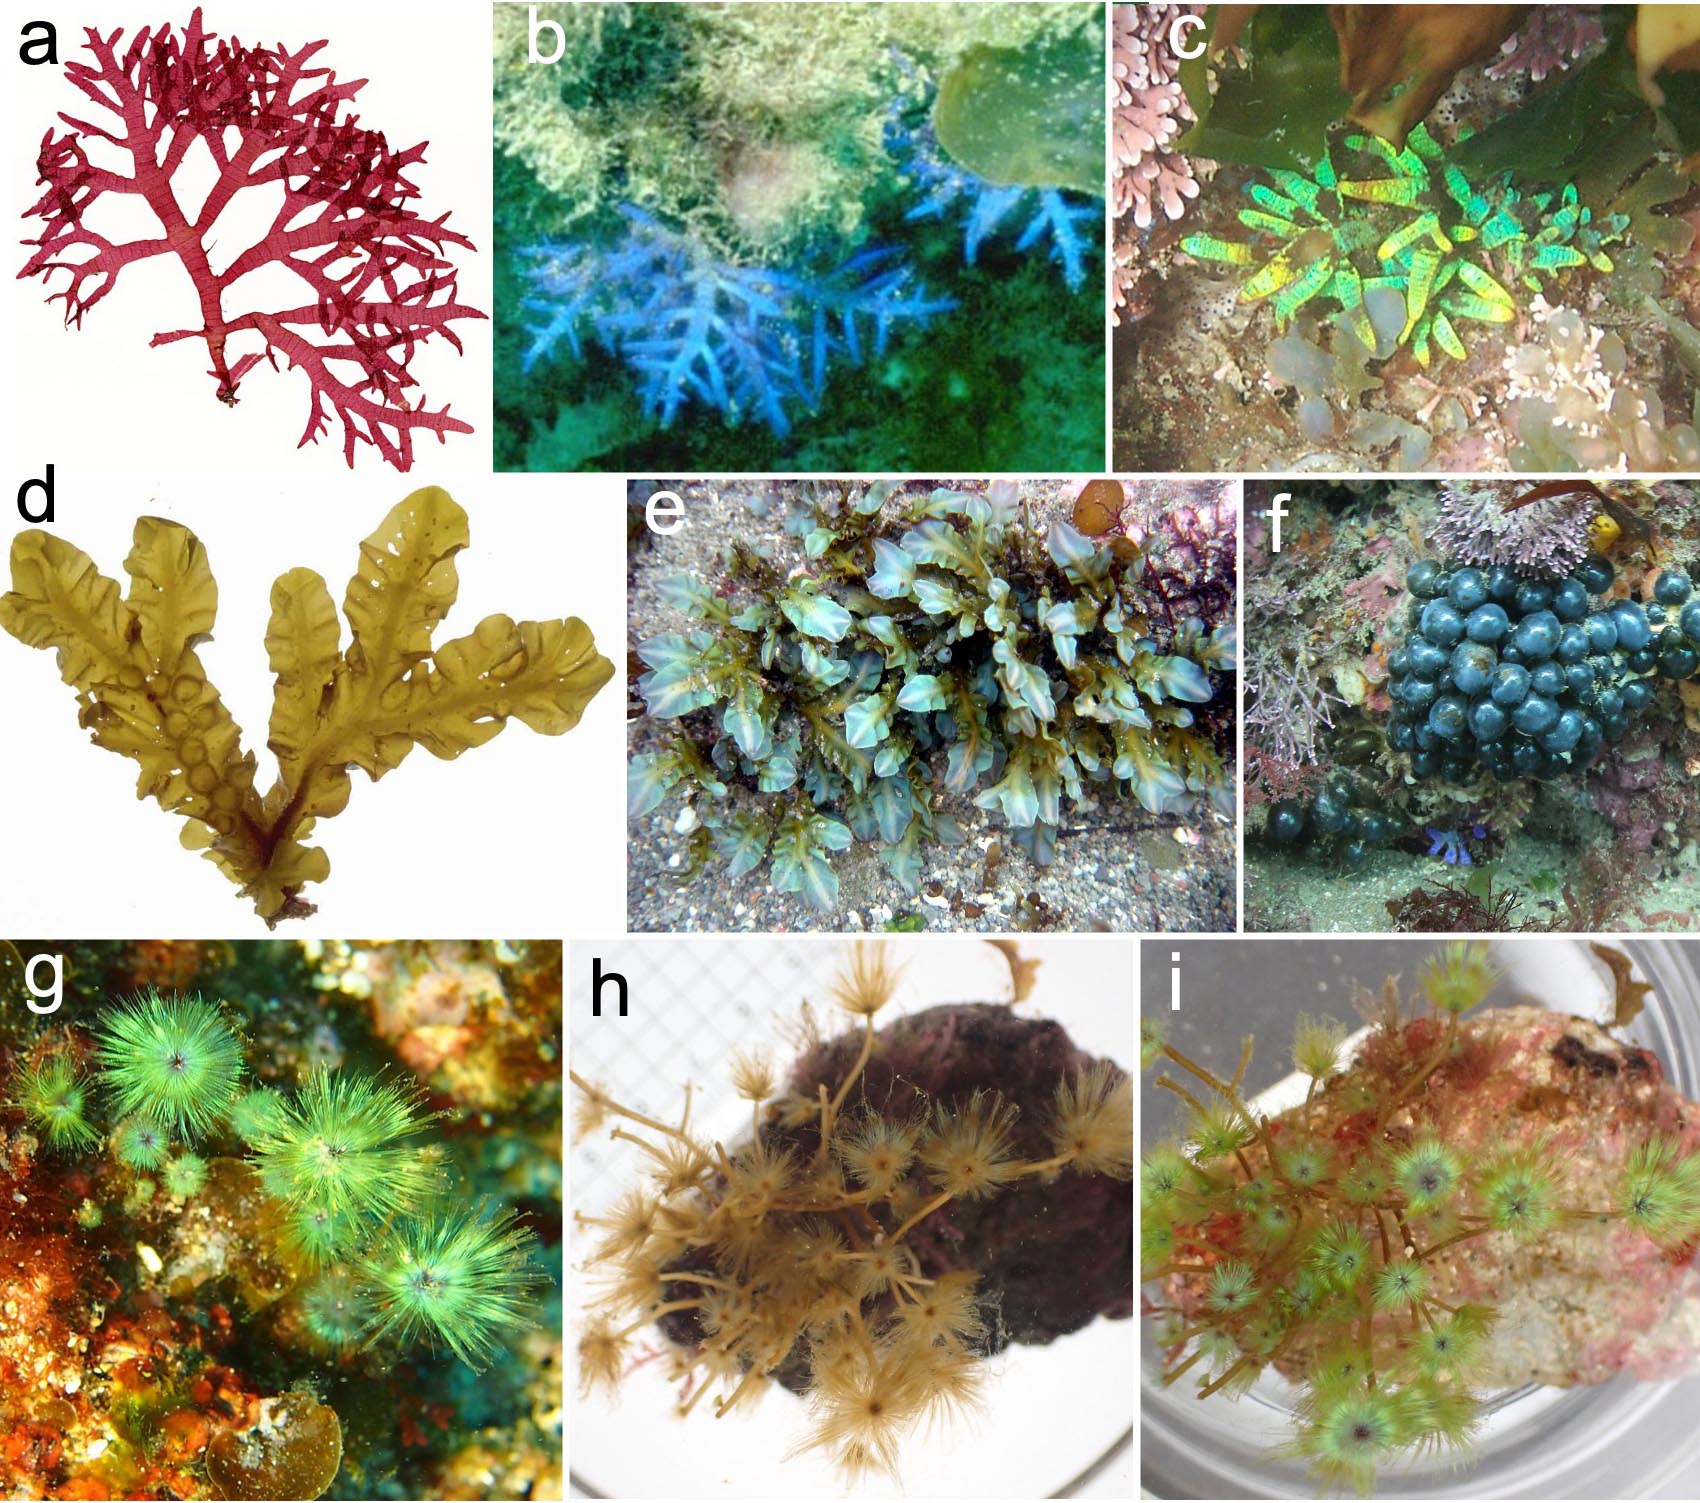 図4 さまざまな海藻類でみられる構造色。紅藻ヒラワツナギソウ（a–c）；褐藻シワヤハズ (d, e)；緑藻タマゴバロニア (f)；褐藻クジャクケヤリ (g–i)．a, d, hは藻体の下側からの照明で色素による色が，b, c, e, f, g, i は藻体上部からの照明で構造色が観察される．